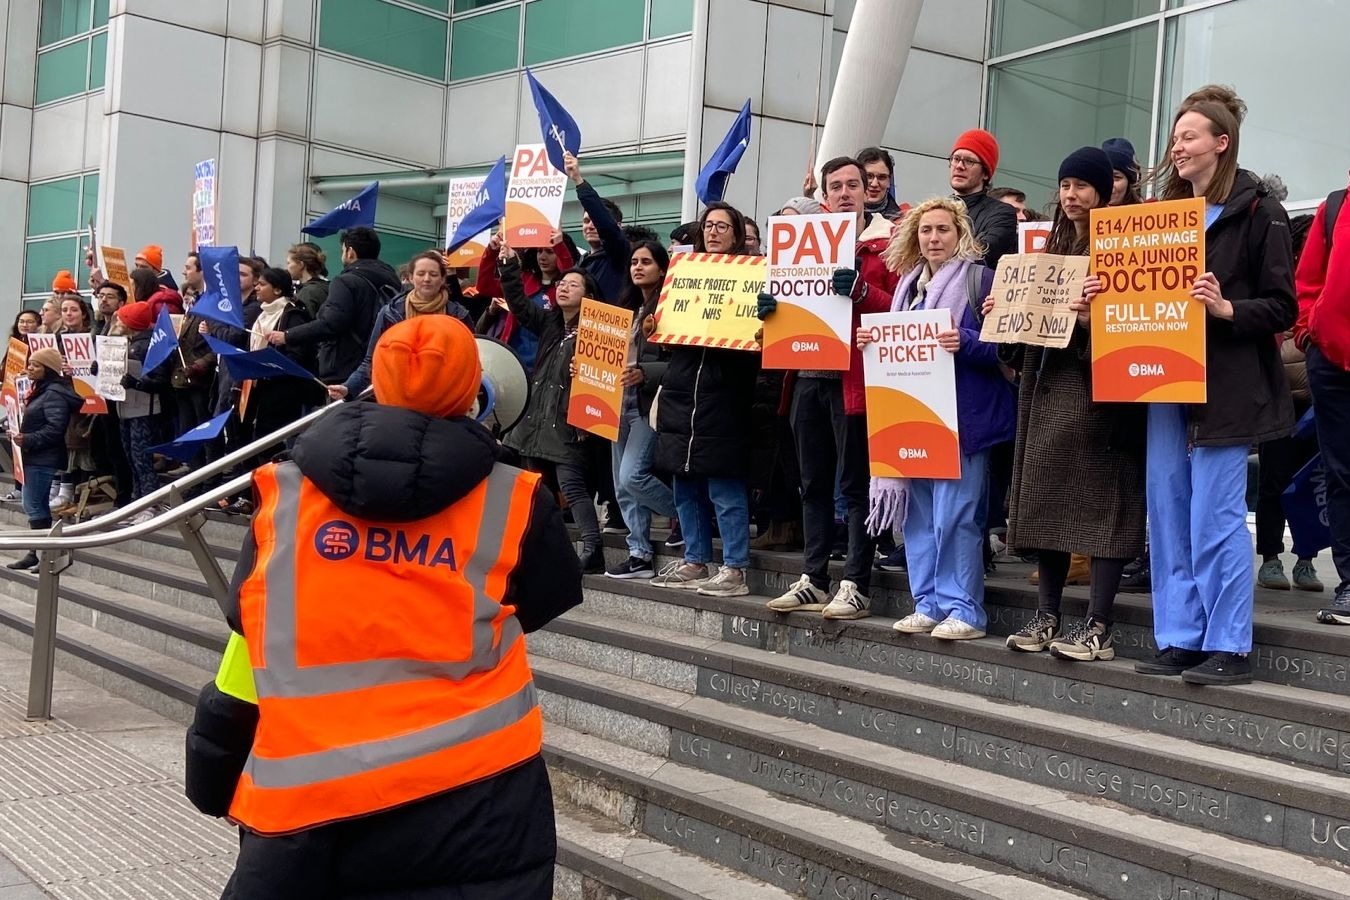 英國逾萬初級醫生罷工3日 要求改善時薪14鎊待遇